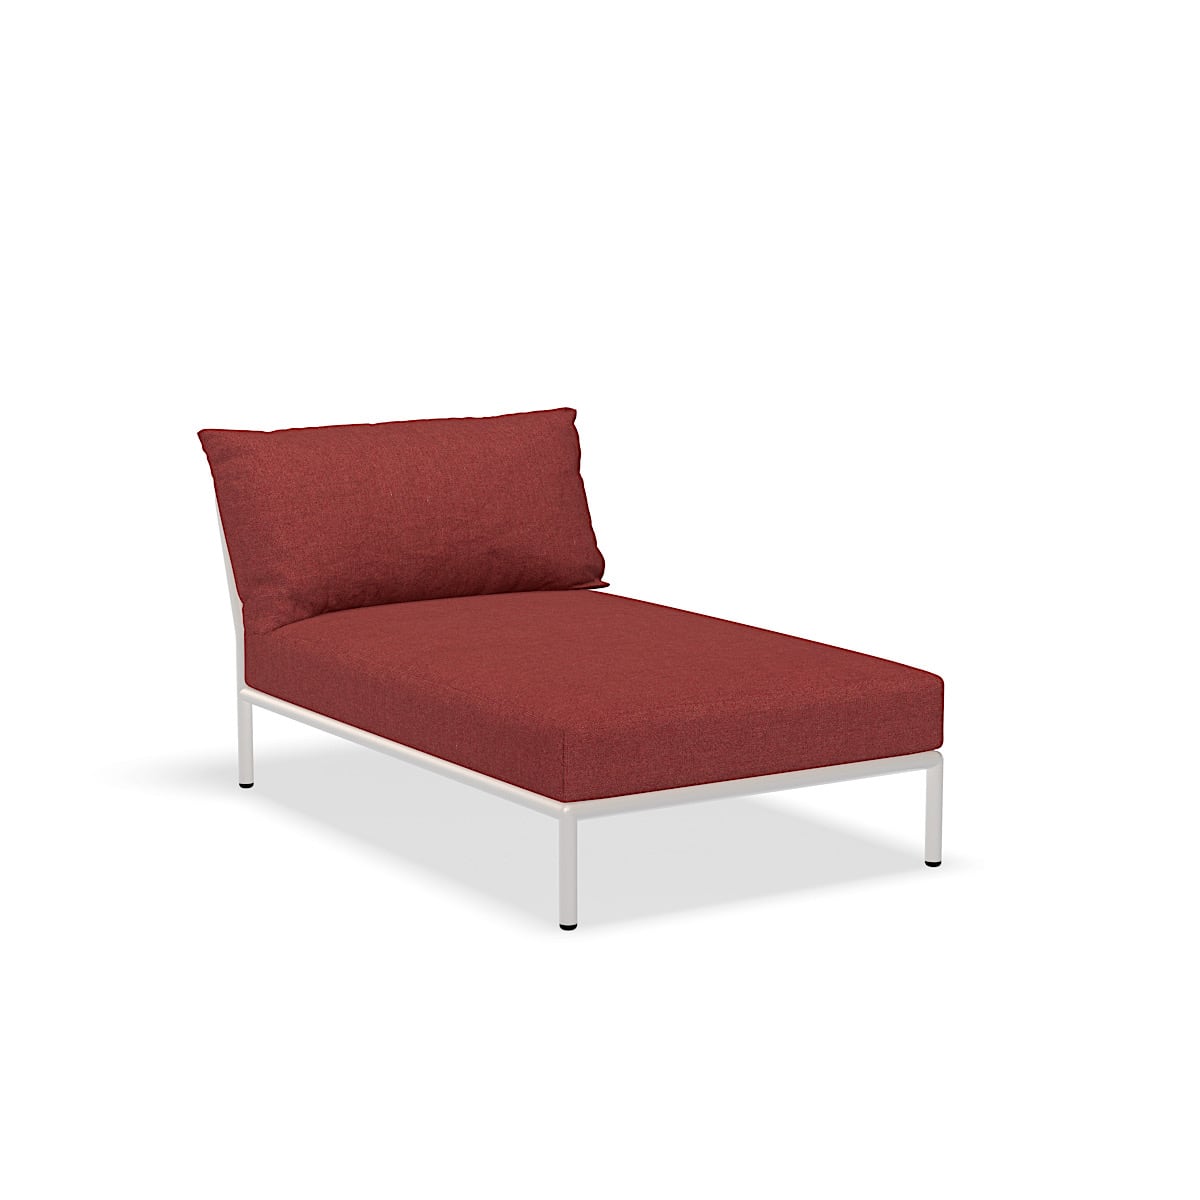 Lounge stol - 22209-1643 - Lounge stol, Scarlet (HERITAGE), hvid struktur